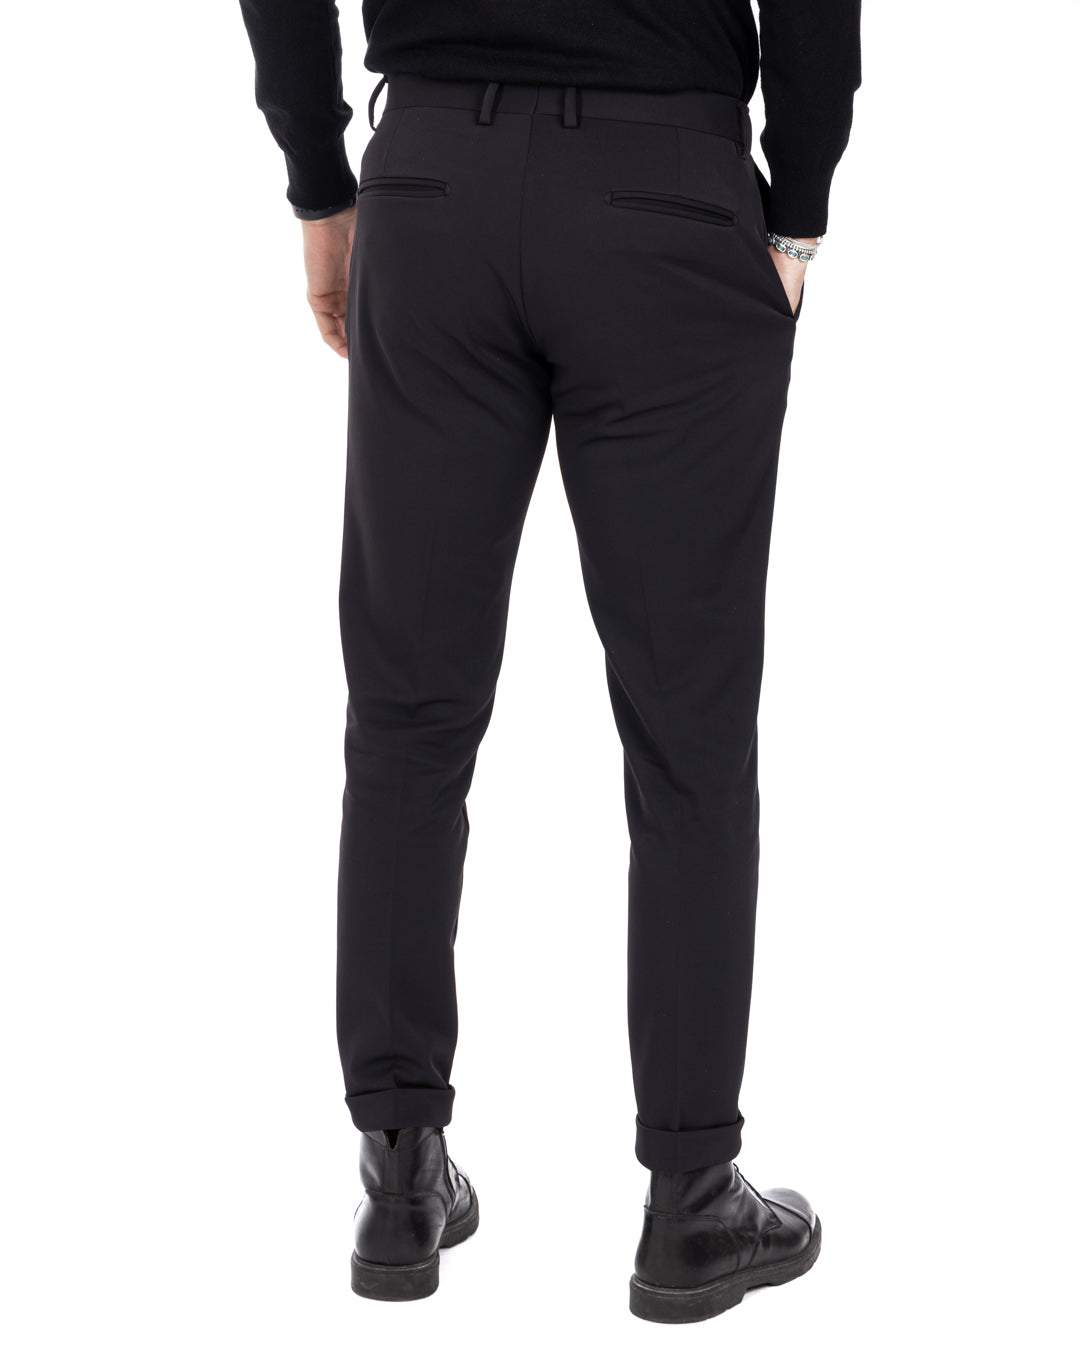 Smith - pantalon technique noir